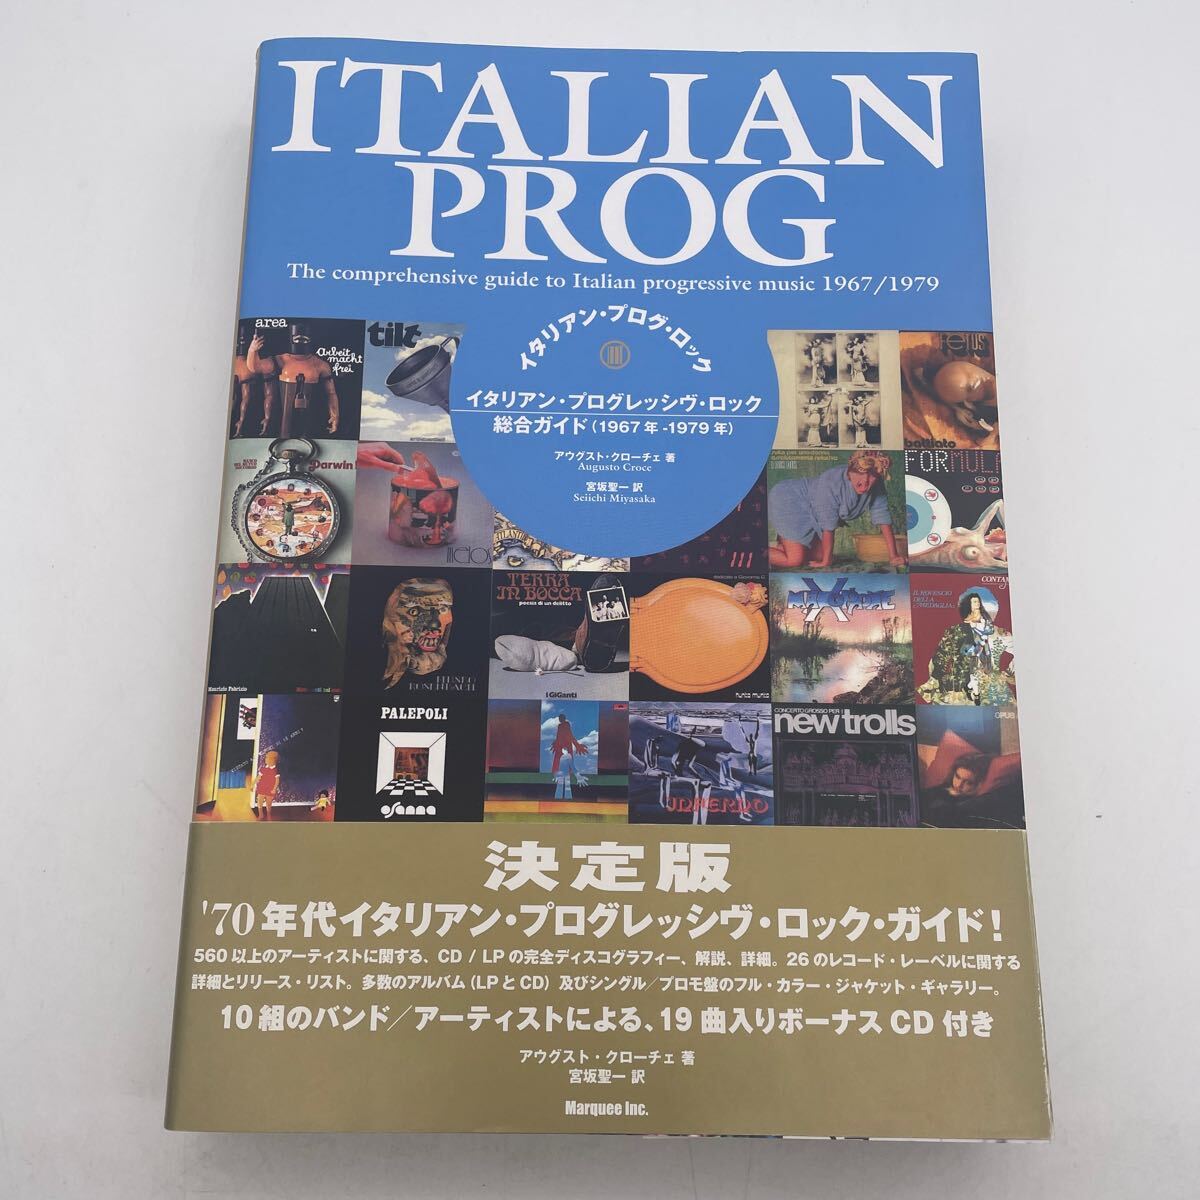 イタリアン・プログ・ロック/イタリアン・プログレッシヴ・ロック総合ガイド(1967年-1979年)の画像1